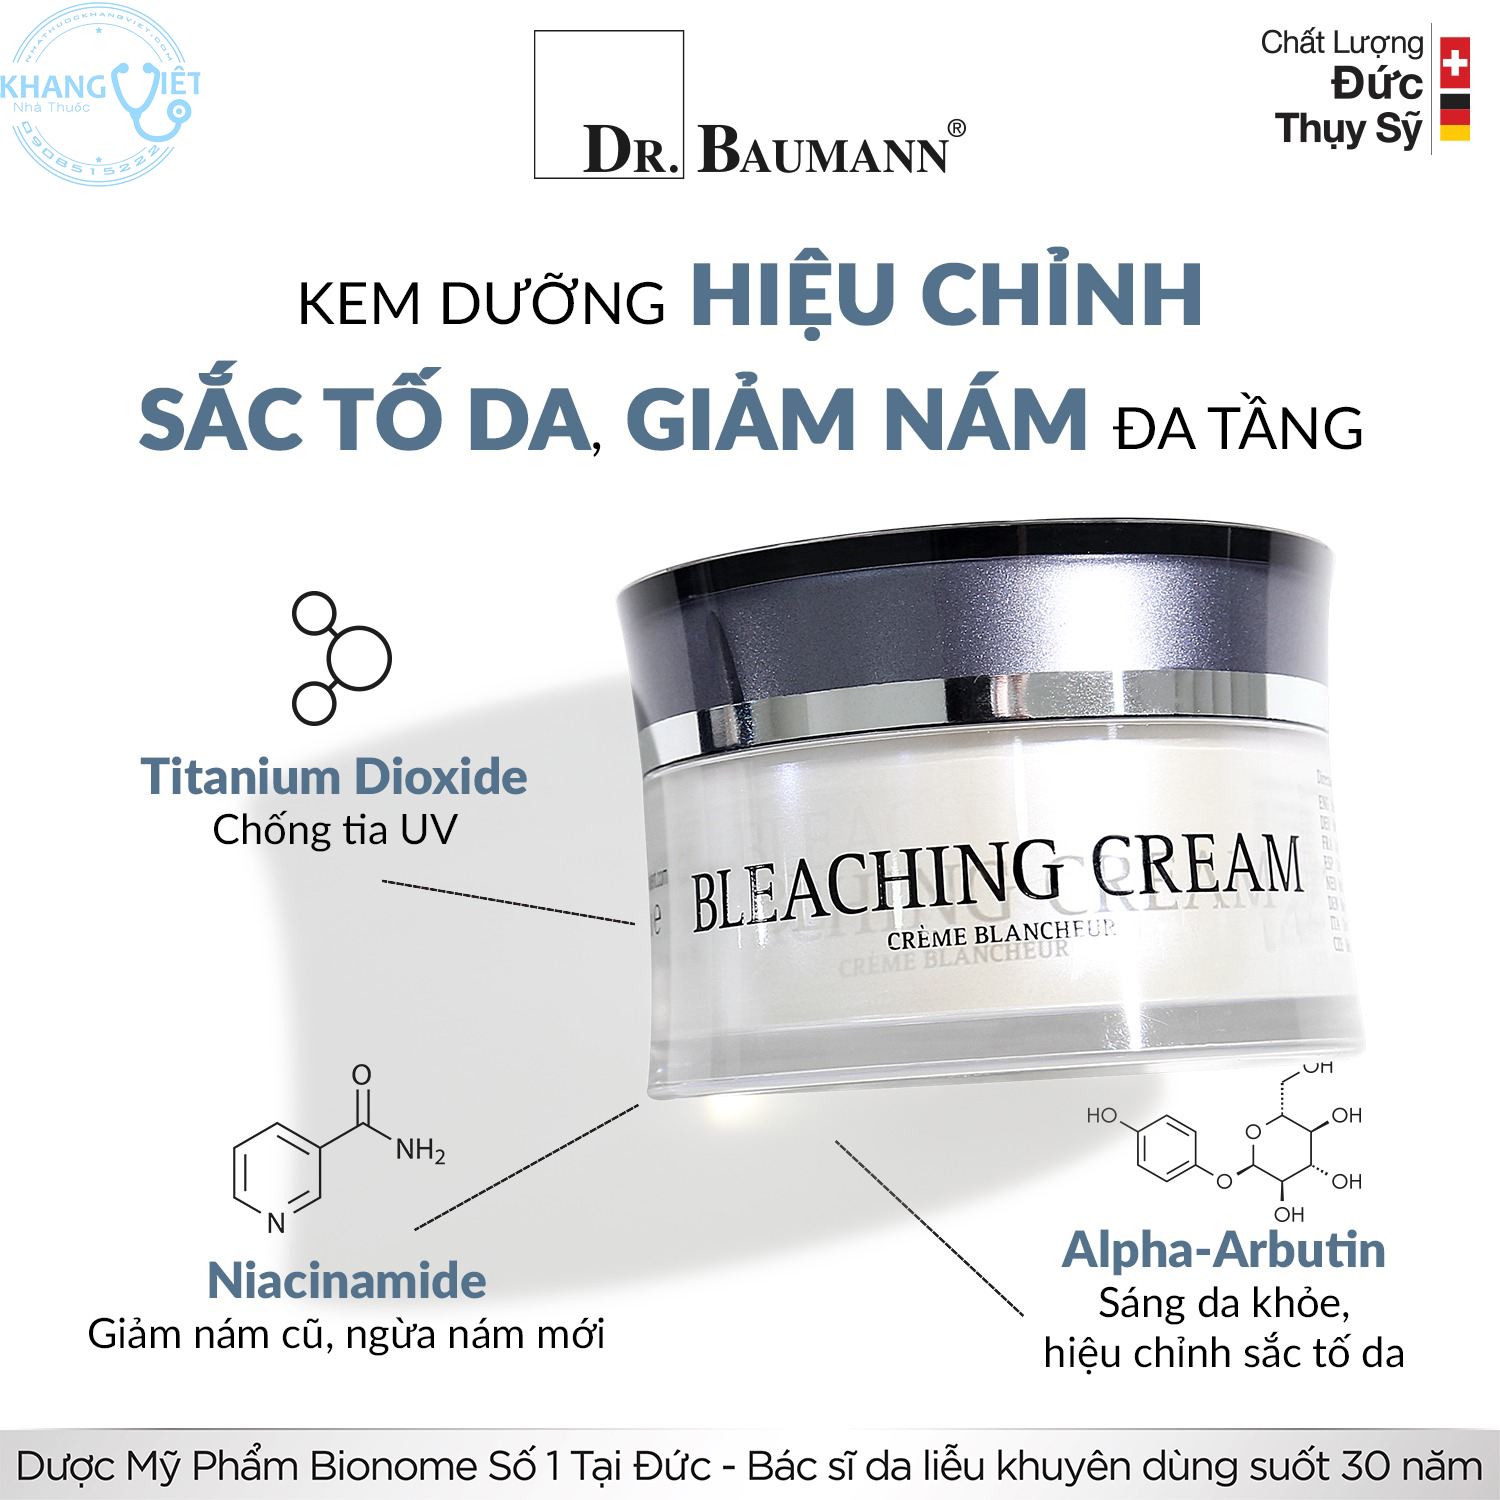 Dr. Baumann Bleaching Cream.